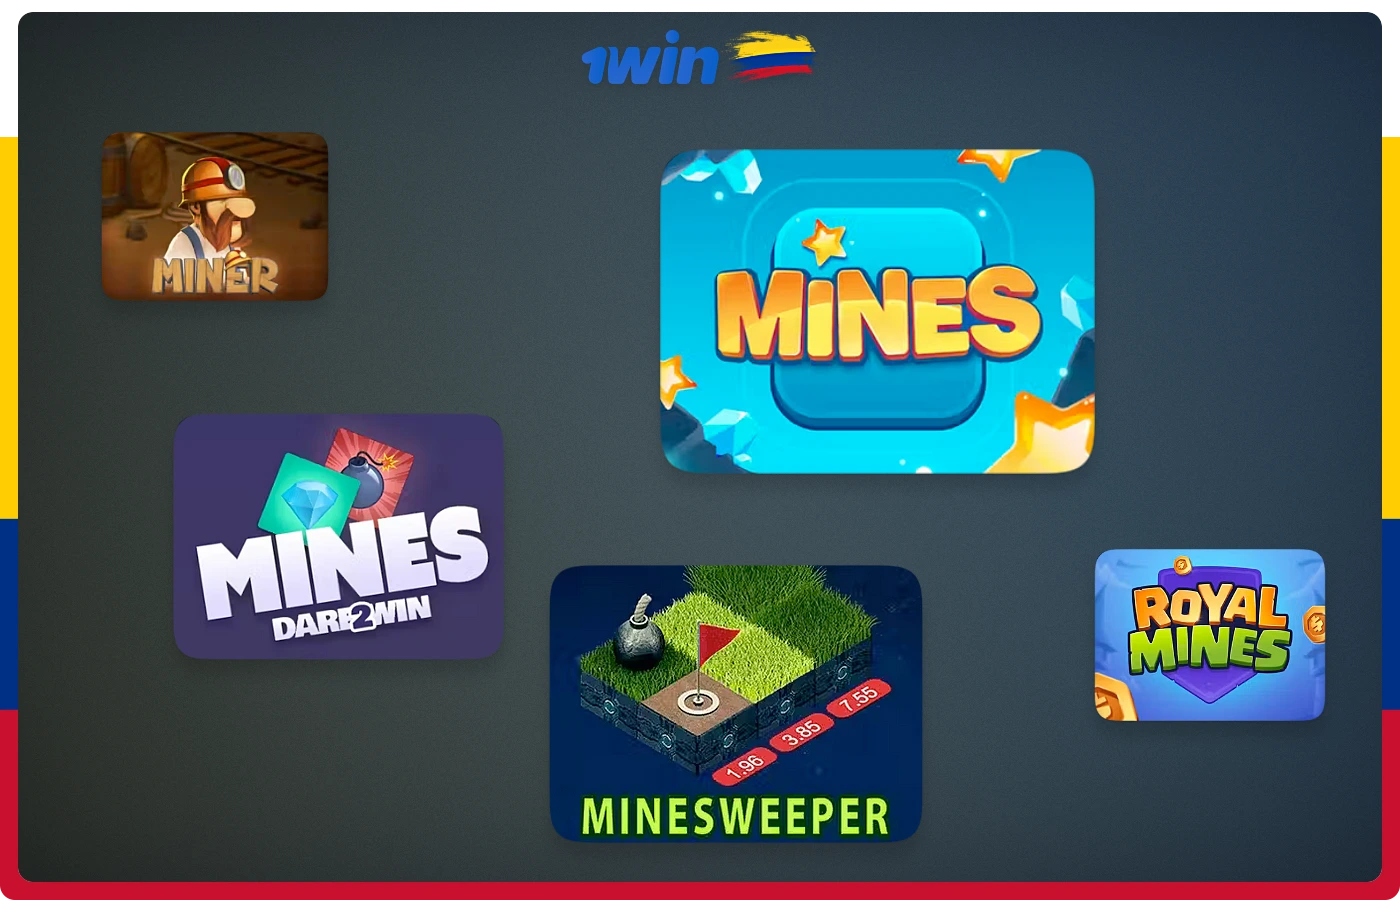 1win Colombia ofrece a sus usuarios numerosos juegos del género de las minas